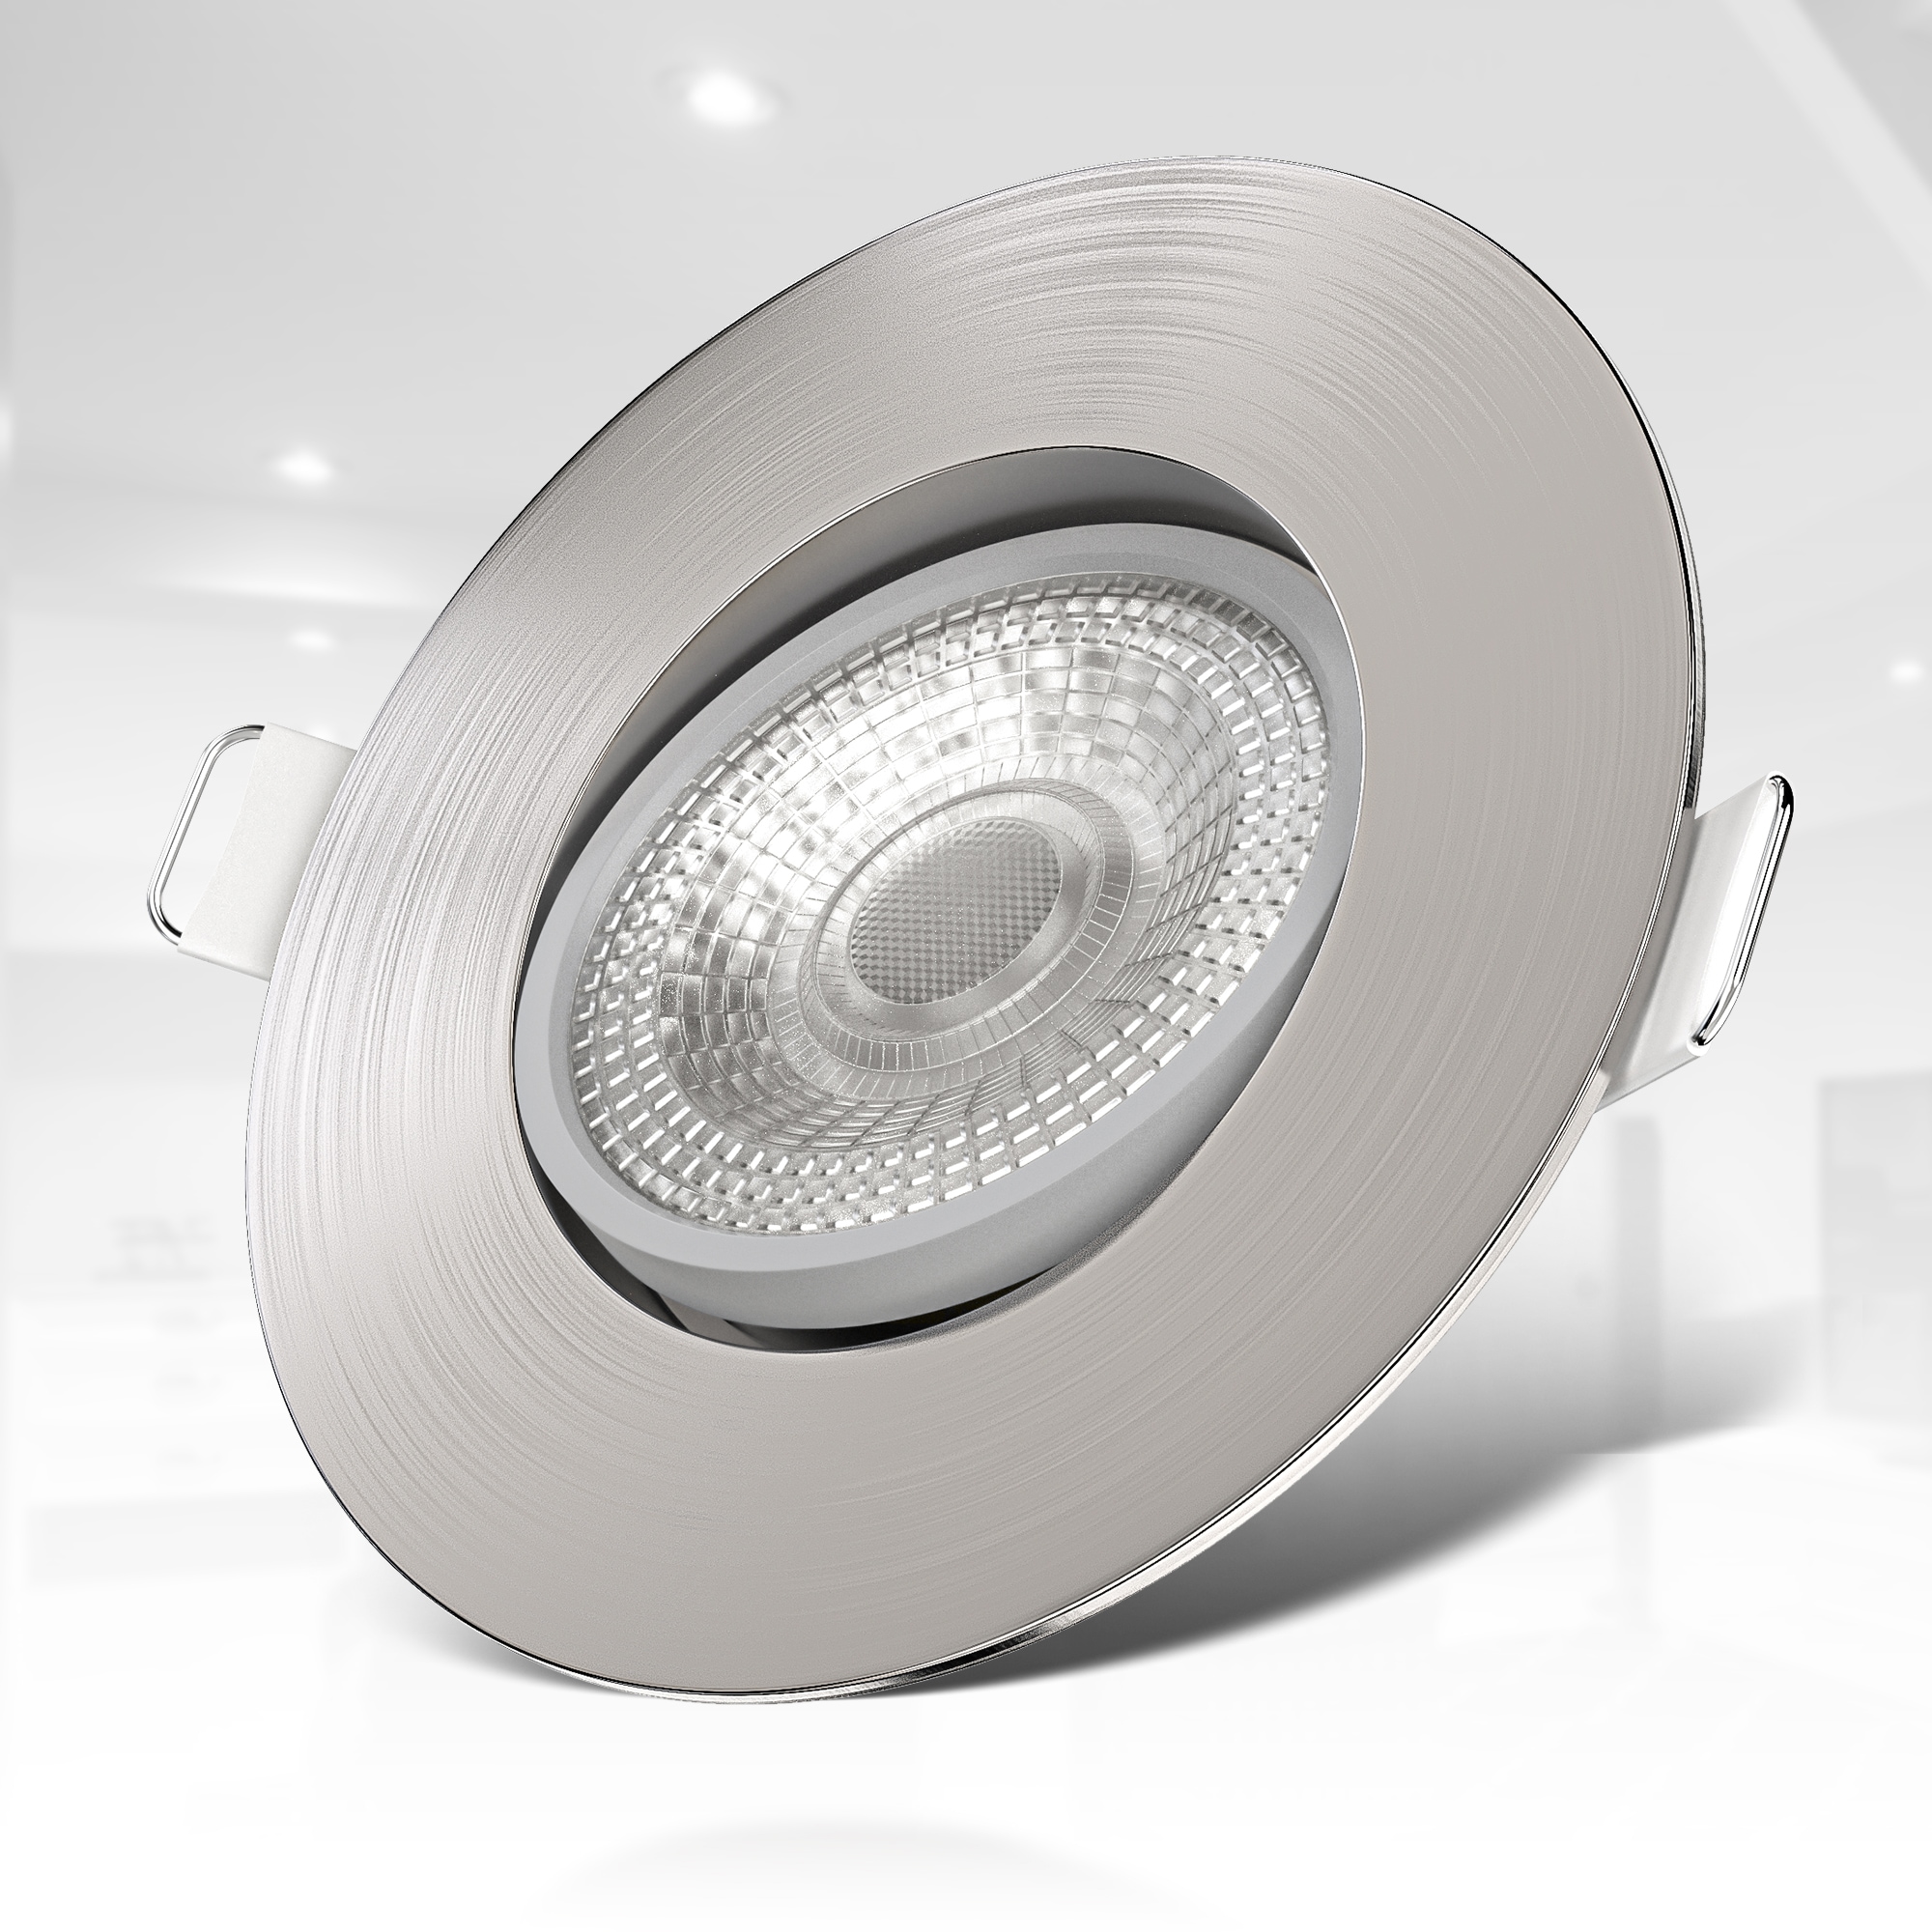 B.K.Licht LED Einbauleuchte, 6 flammig-flammig, Einbauspots, schwenkbar,  Deckenstrahler, ultra-flach, IP23, 6er SET online bestellen